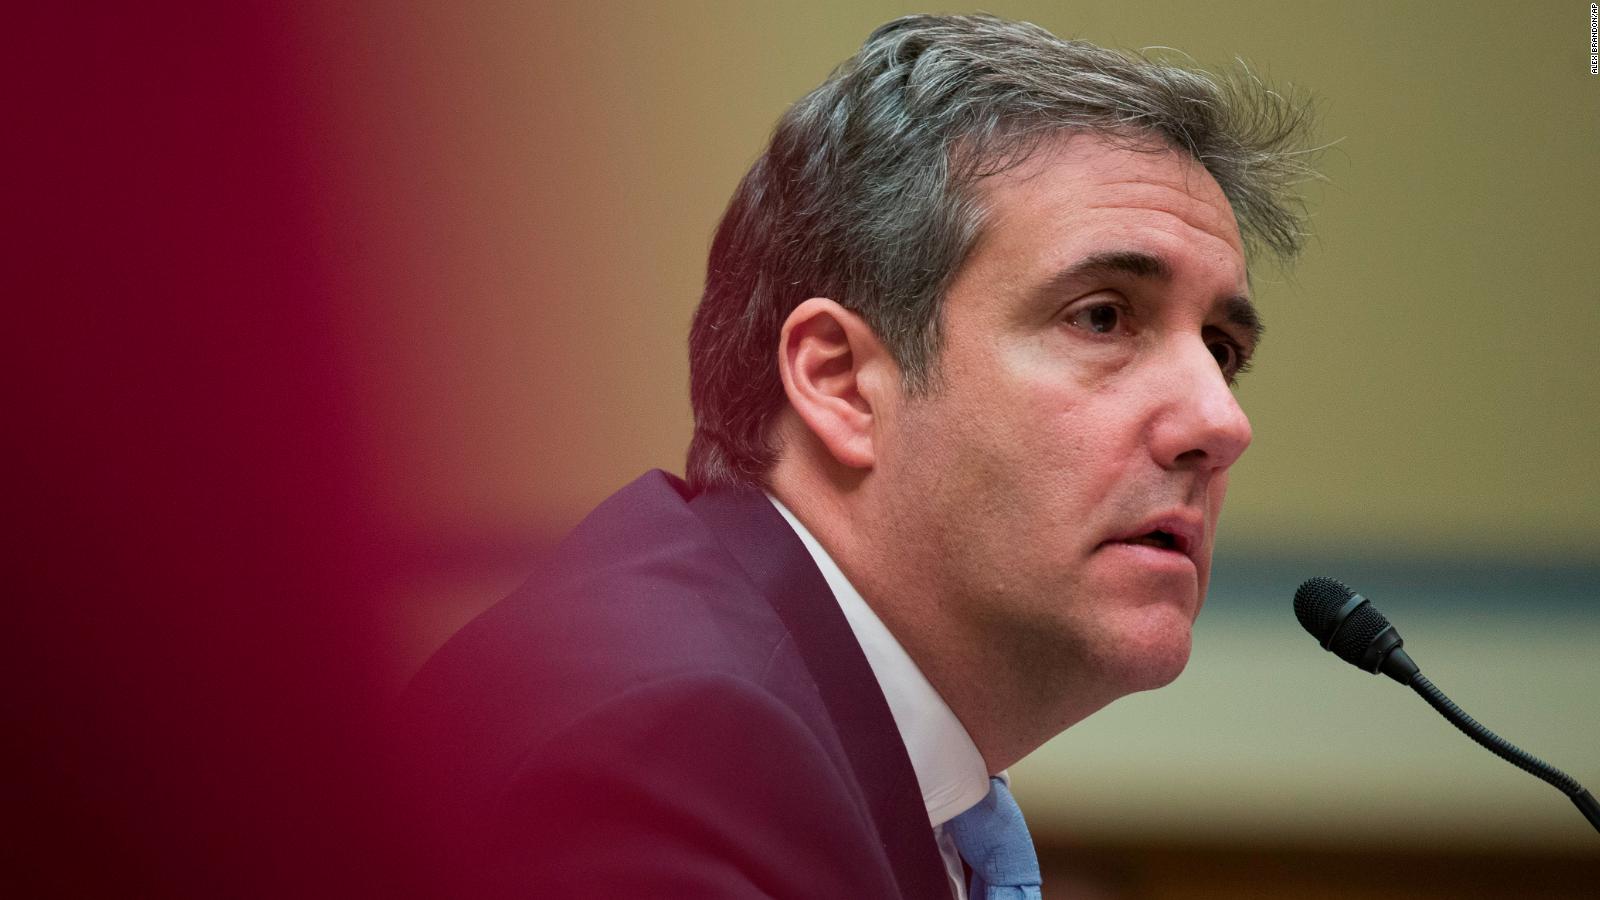 El duro testimonio de Michael Cohen sobre su exjefe retumbó en el Congreso de EE.UU. | Video | CNN